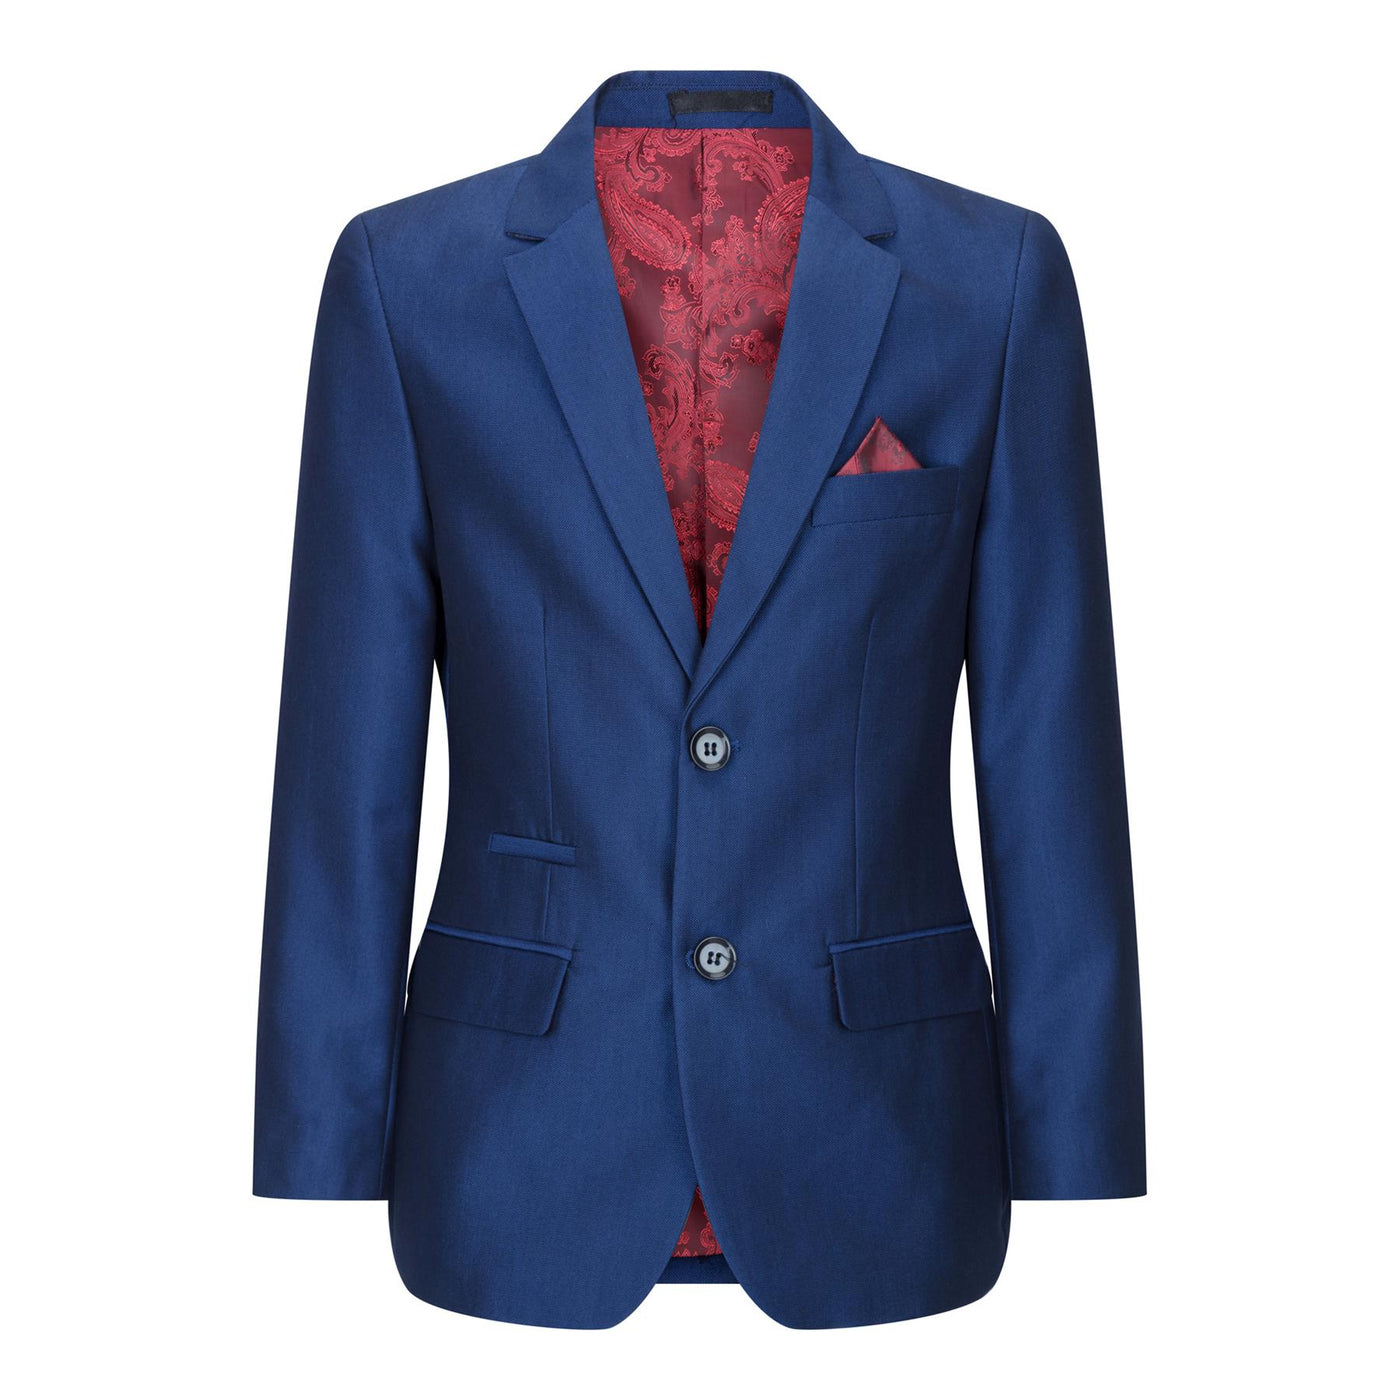 Boys 3 Piece Shiny Royal Blue Classic Suit